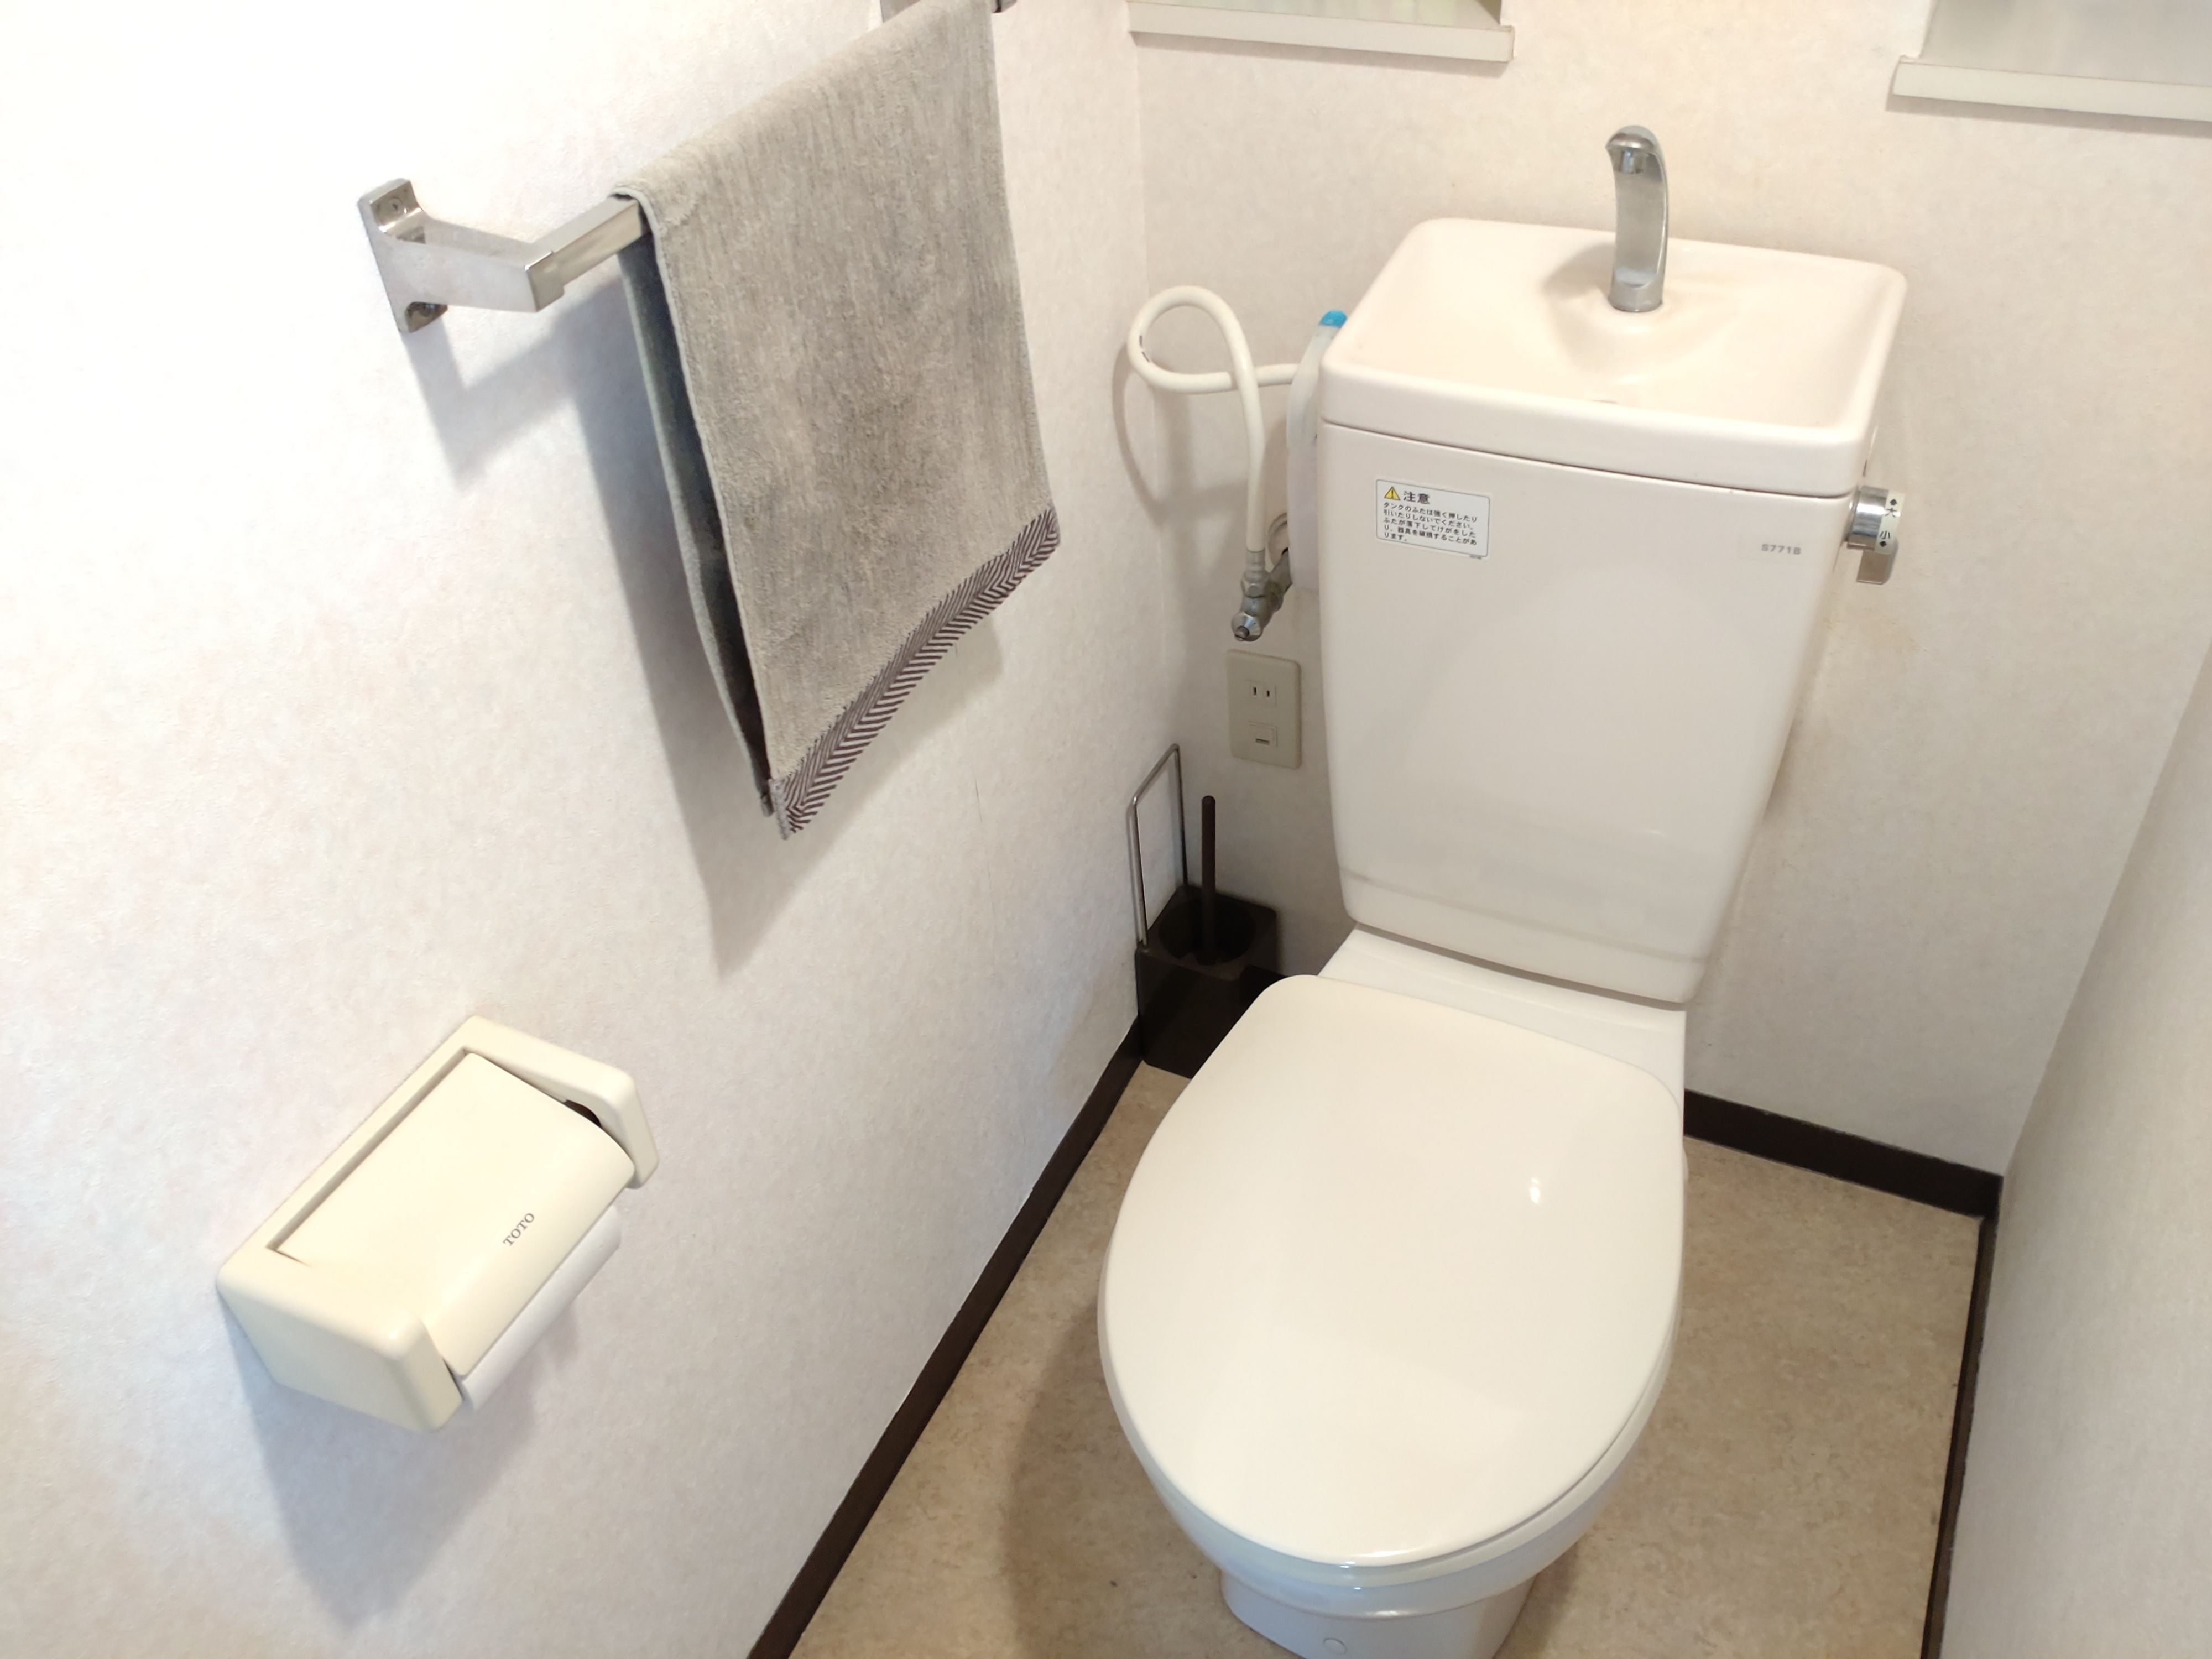 狭いトイレは 空中収納 で解決 100均グッズを使ったトイレットペーパー収納法 暮らしニスタ